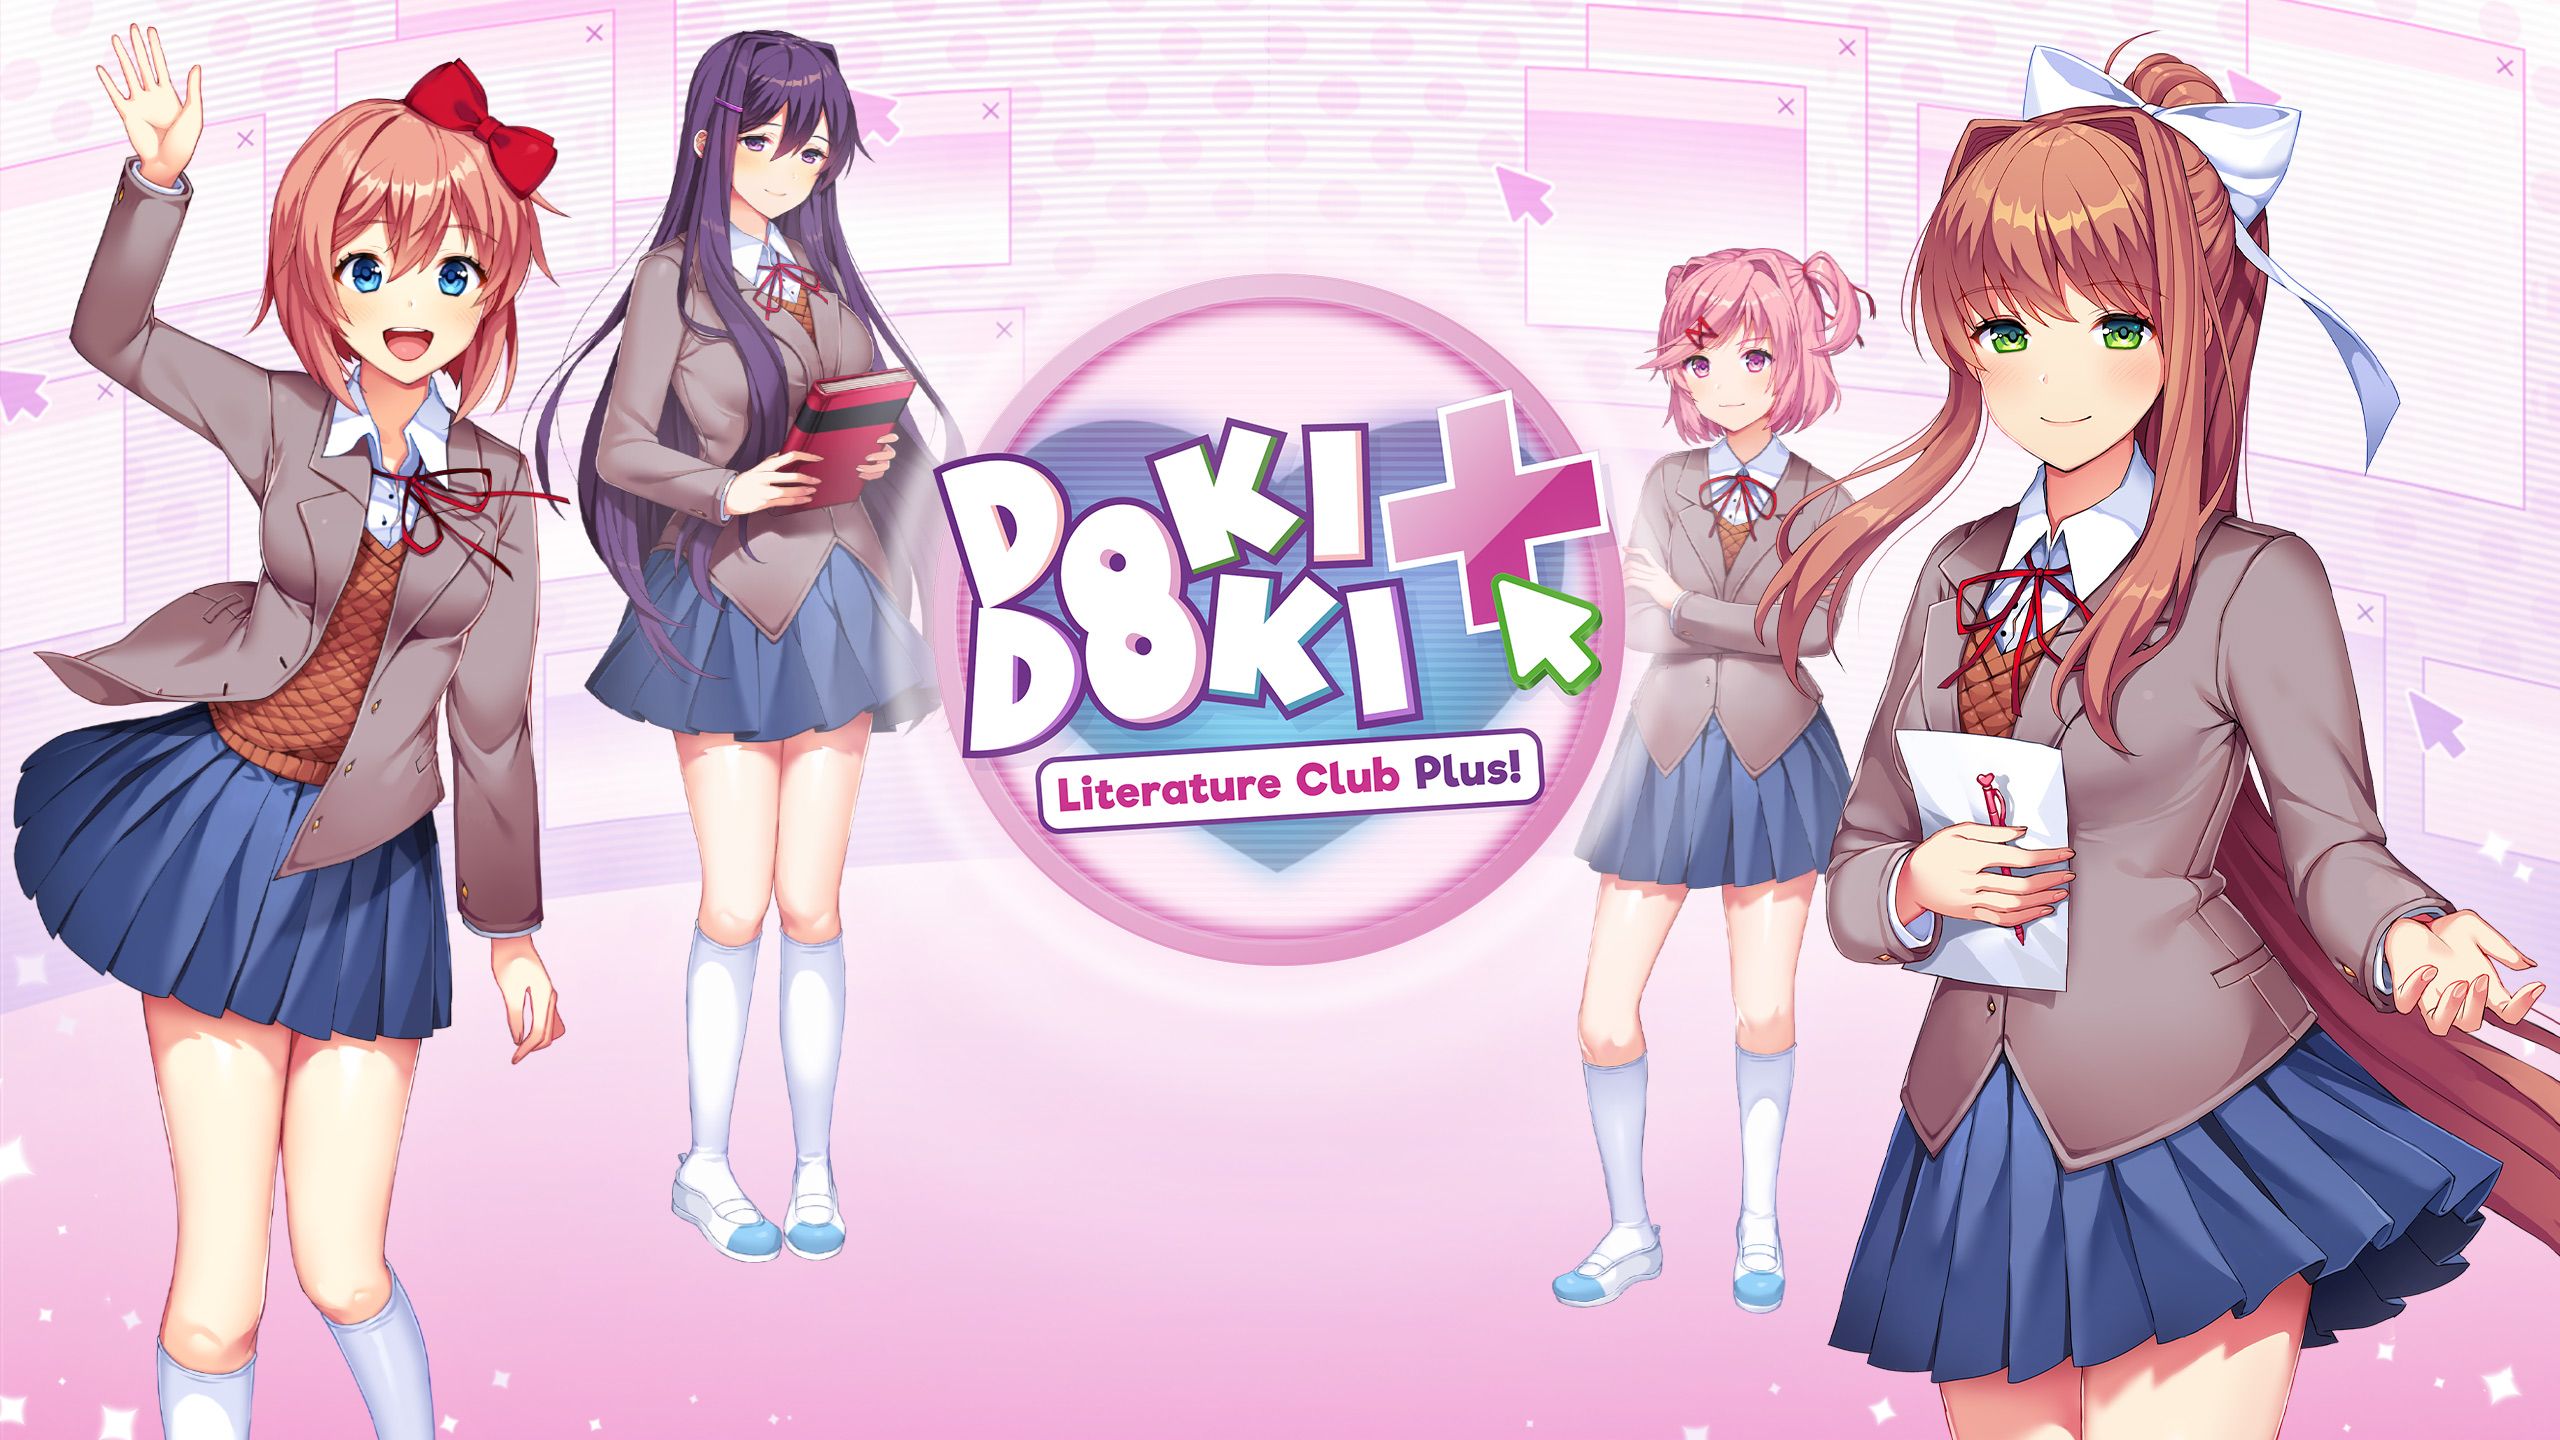 download Doki Doki Literature Club Plus! free